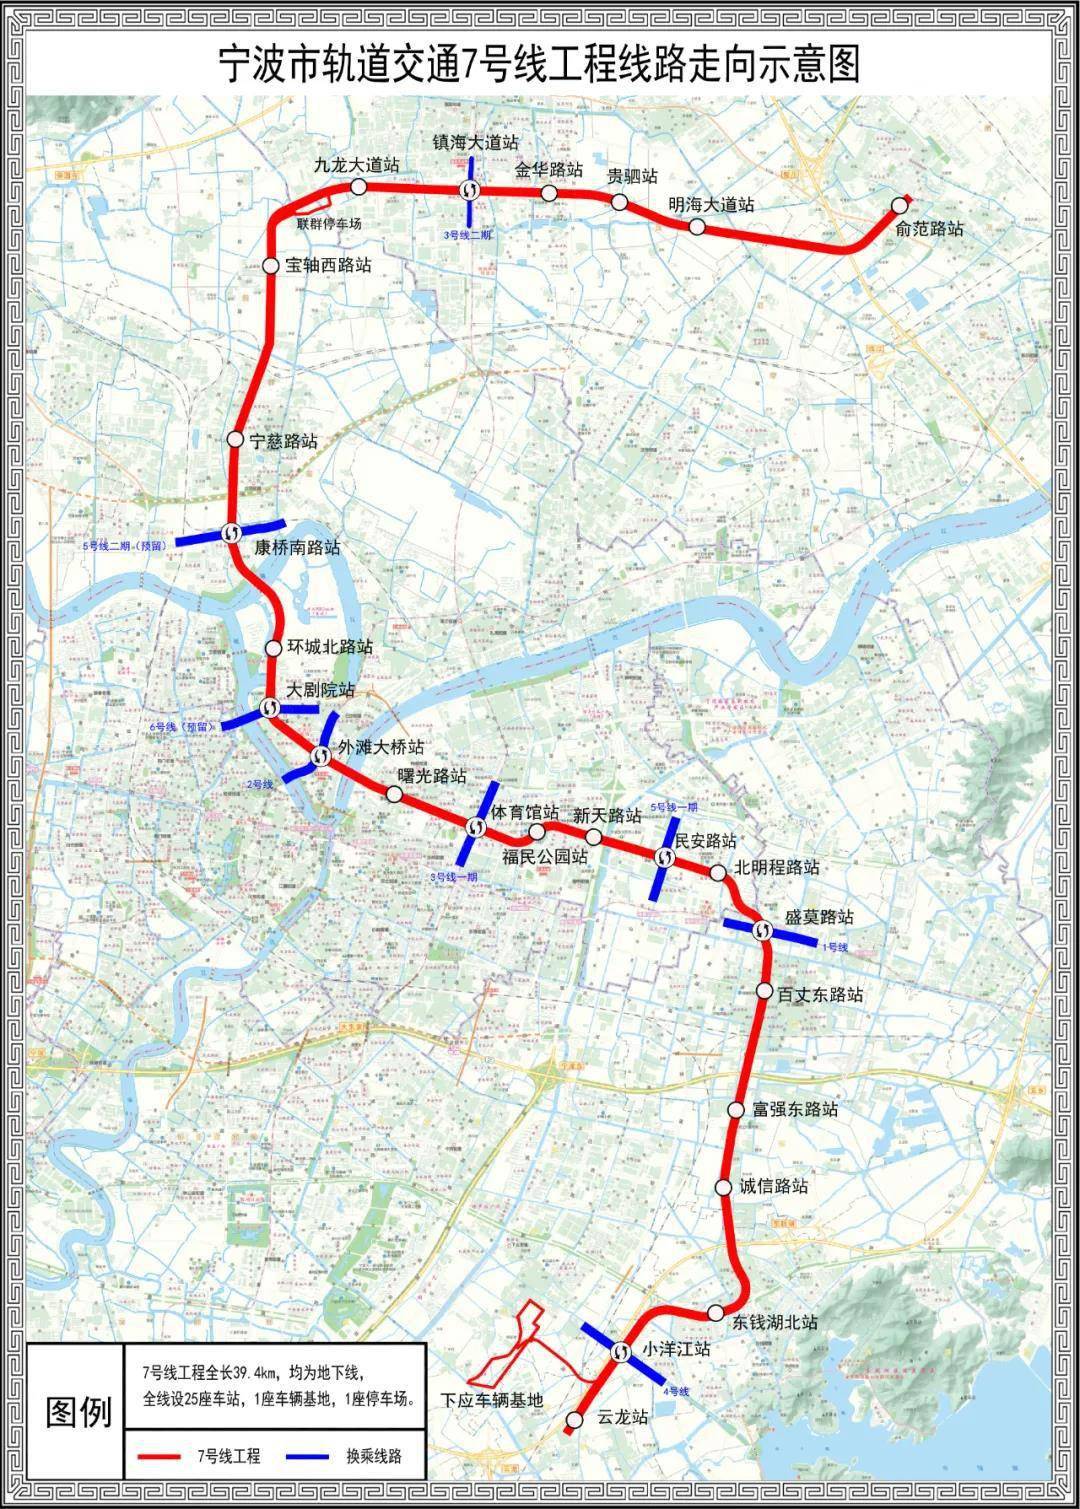 宁波地铁7号线,8号线一期,宁波至舟山铁路(北仑段)最新进展